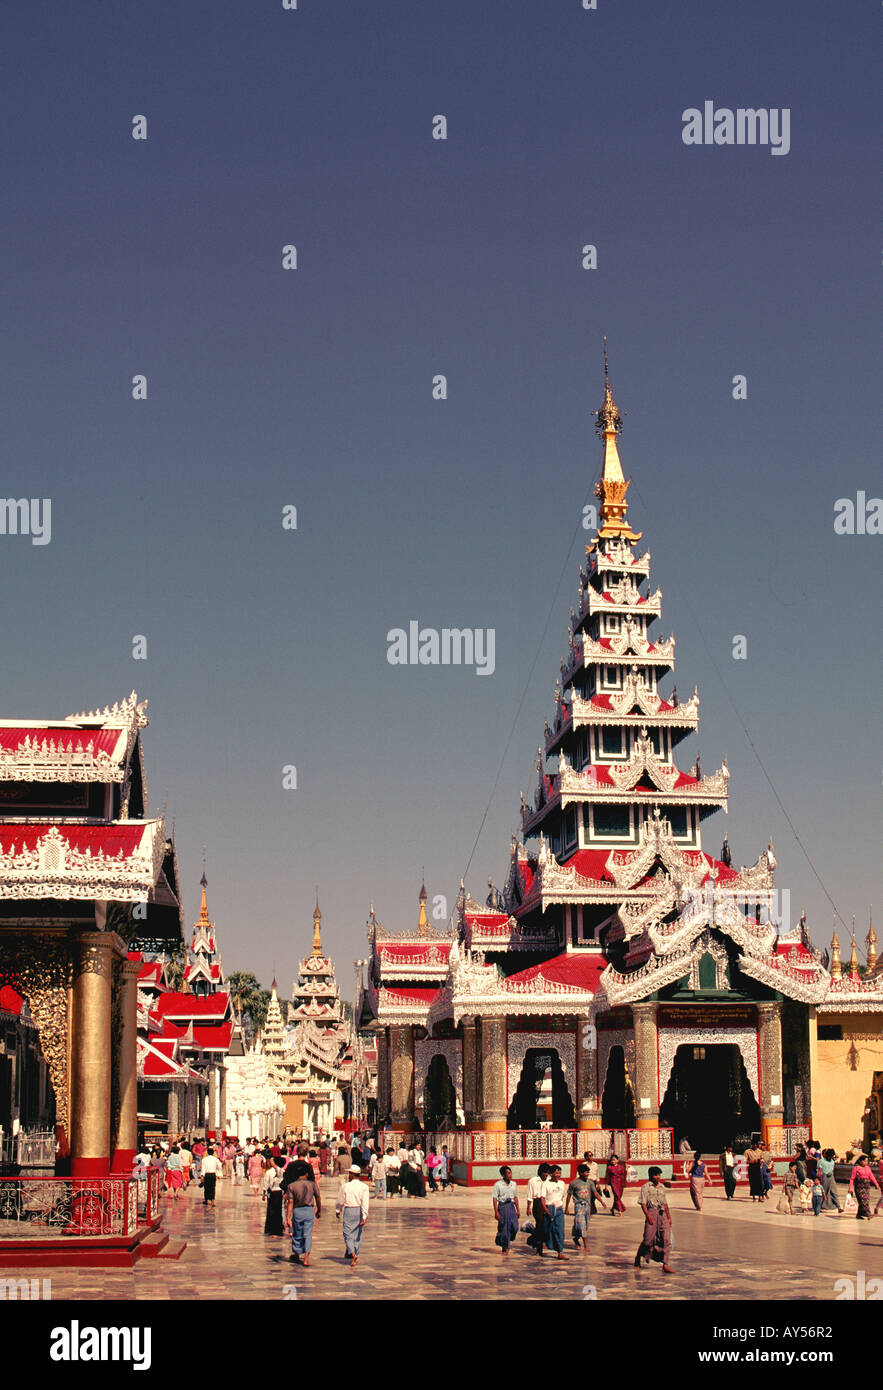 Myanmar Yangon Shwedagon Pagoda Stock Photo